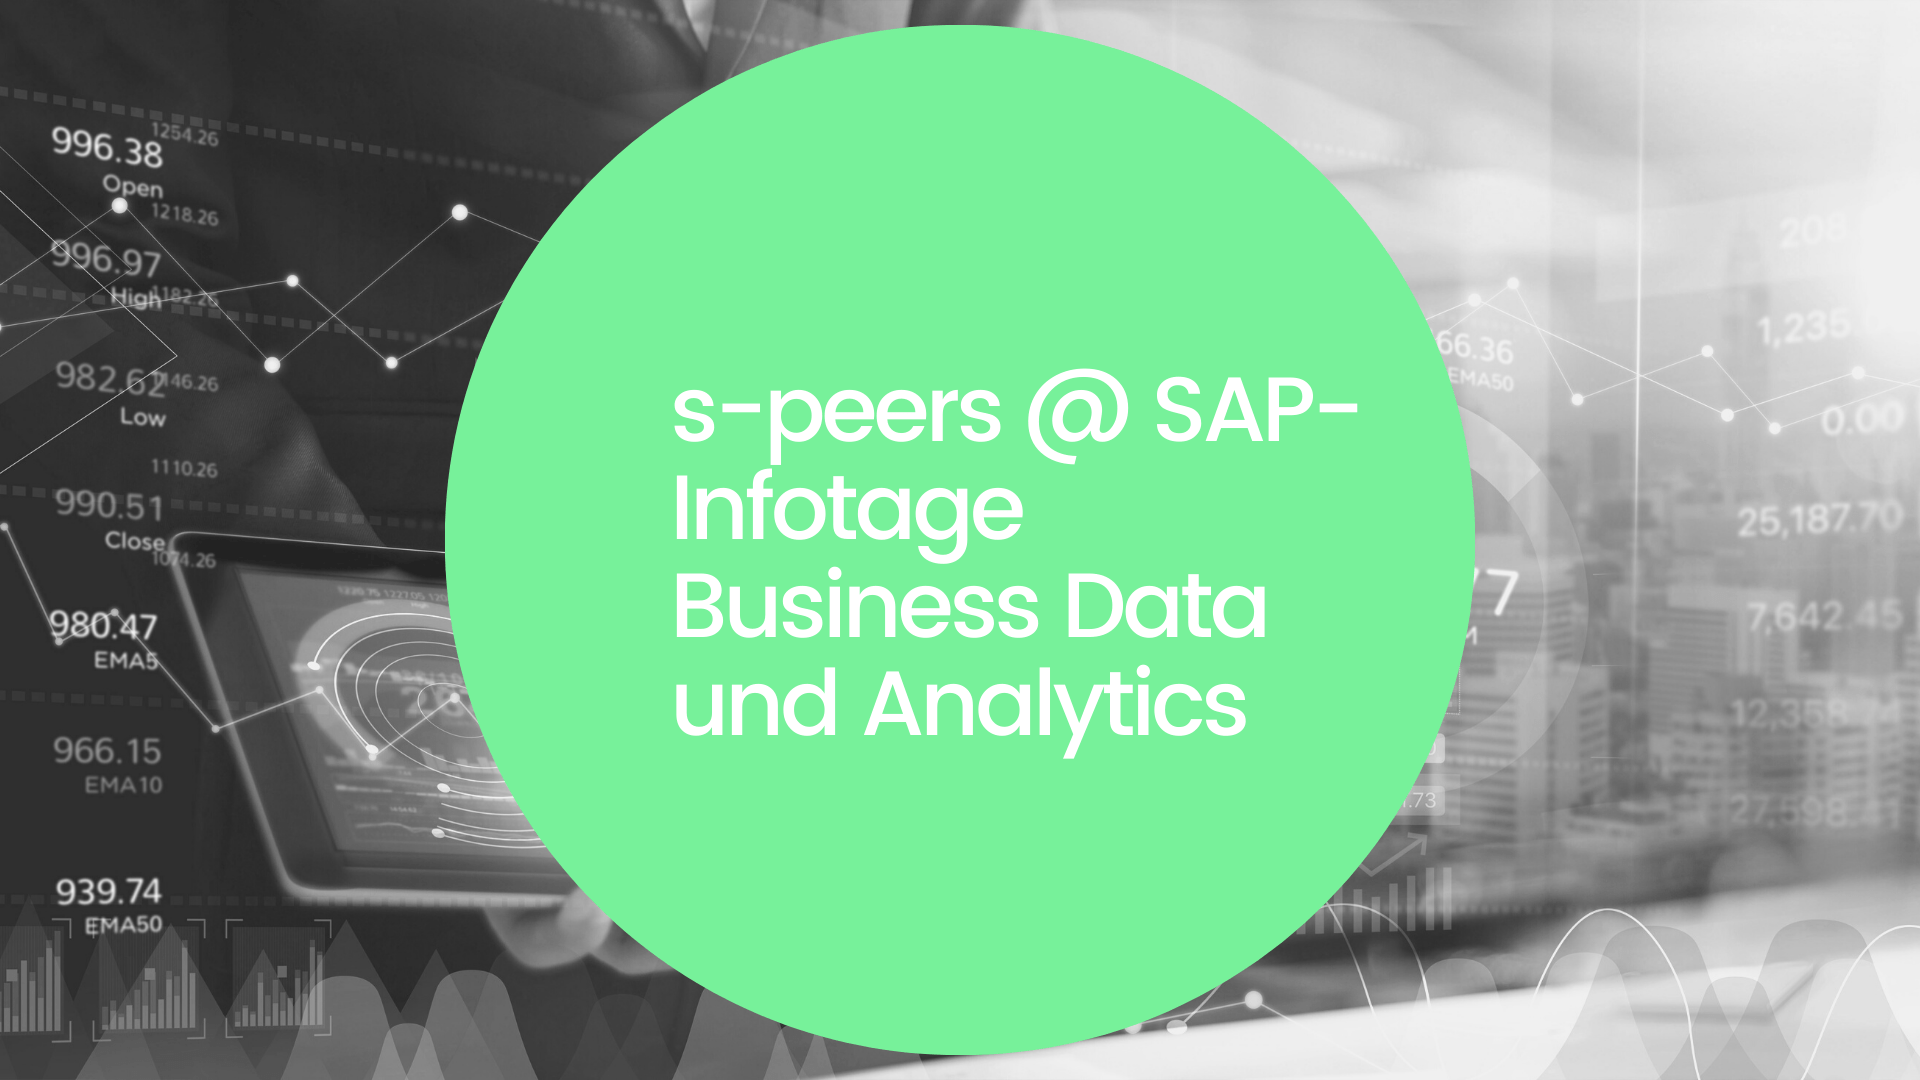 s-peers @ SAP-Infotage Business Data und Analytics